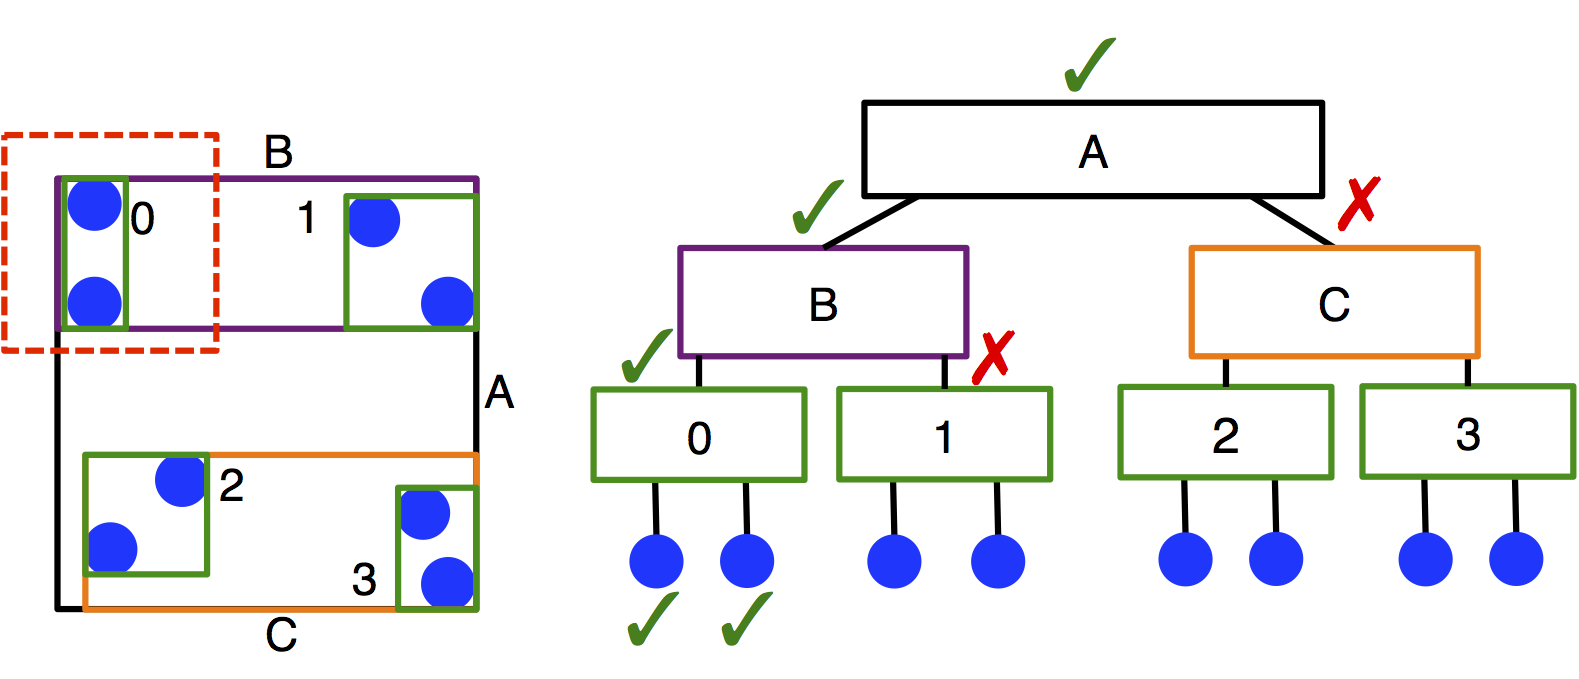 BVH tree schematic